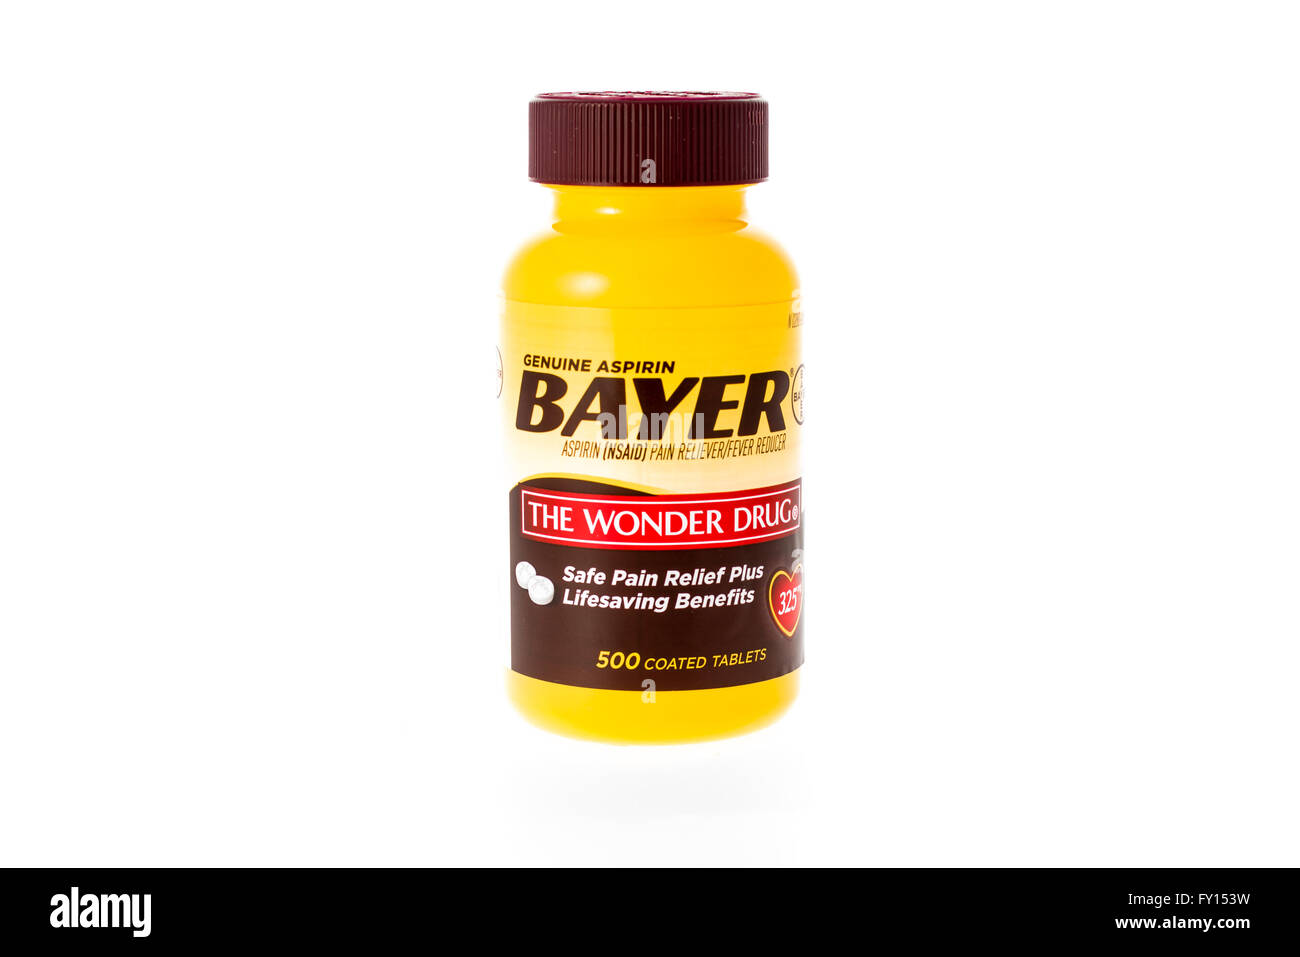 Winneconne, Wisconsin - 9. Februar 2015: Flasche von Bayer Aspirin "die Wunderdroge".  Asperin hilft bei der Linderung von Schmerzen. Stockfoto